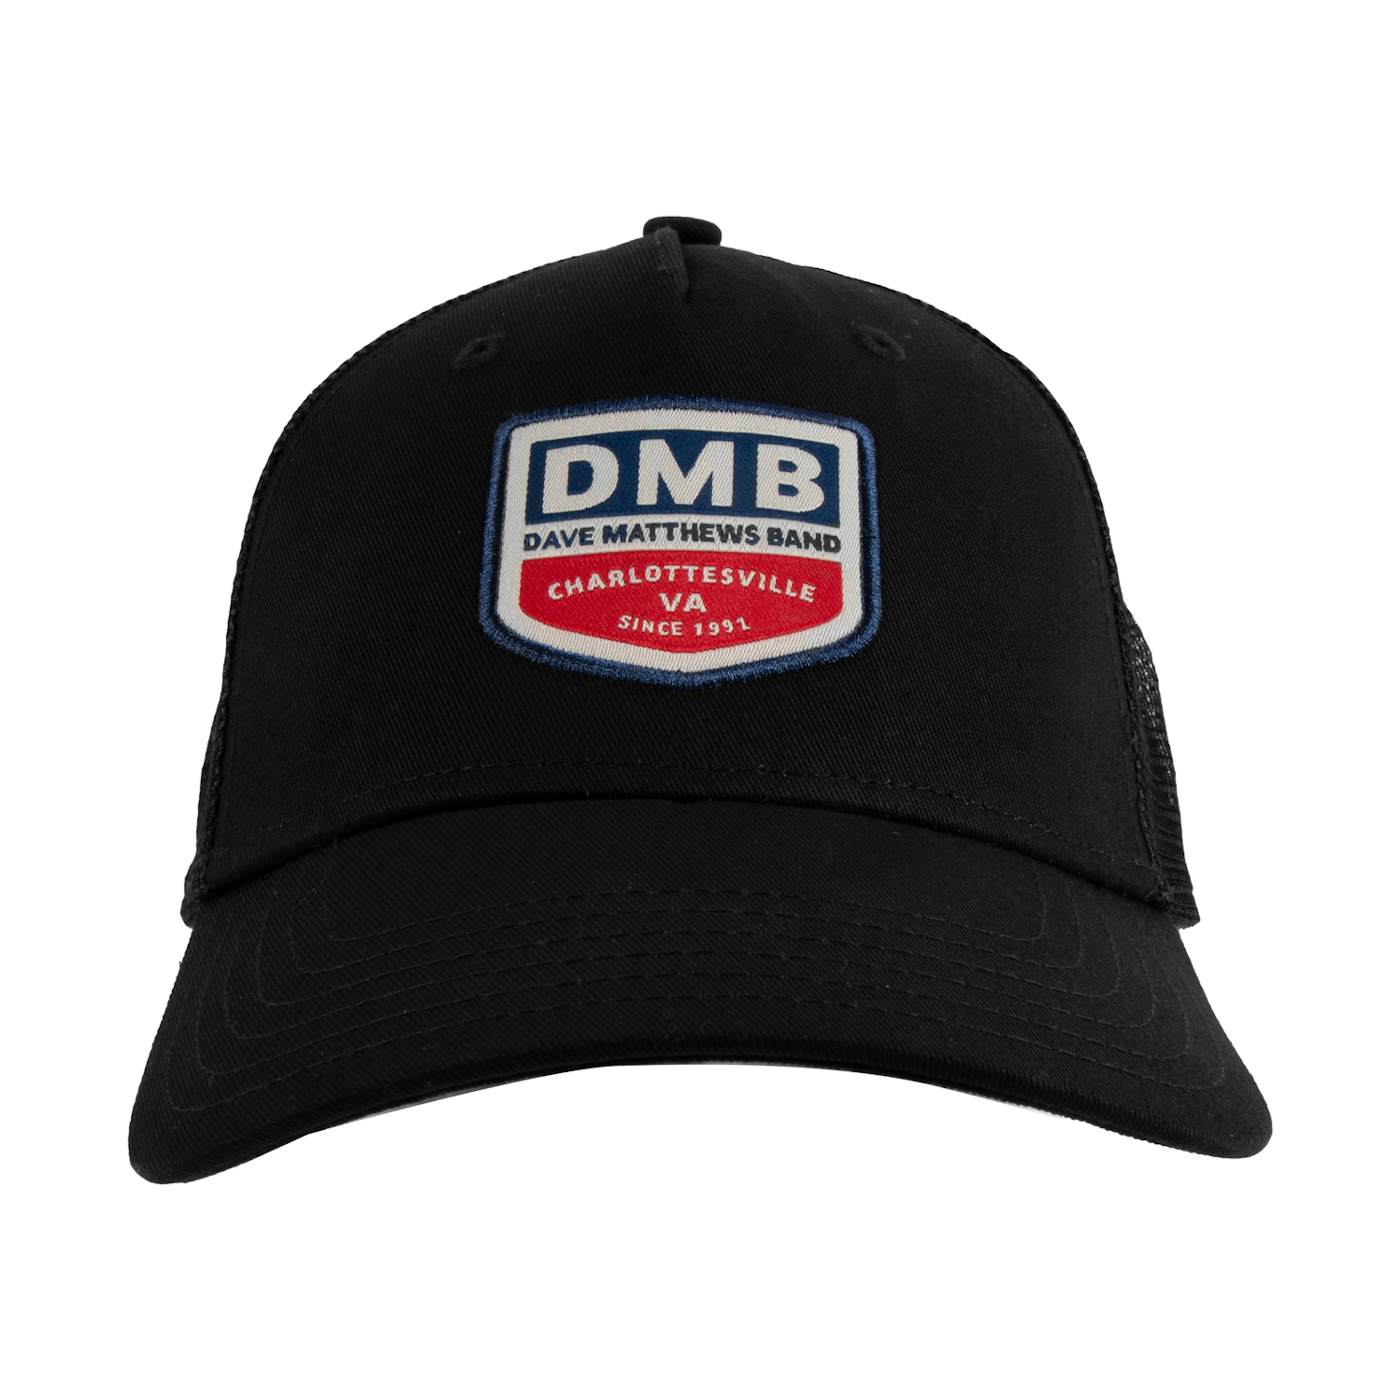 Dave Matthews Band Est. 1991 Trucker Hat